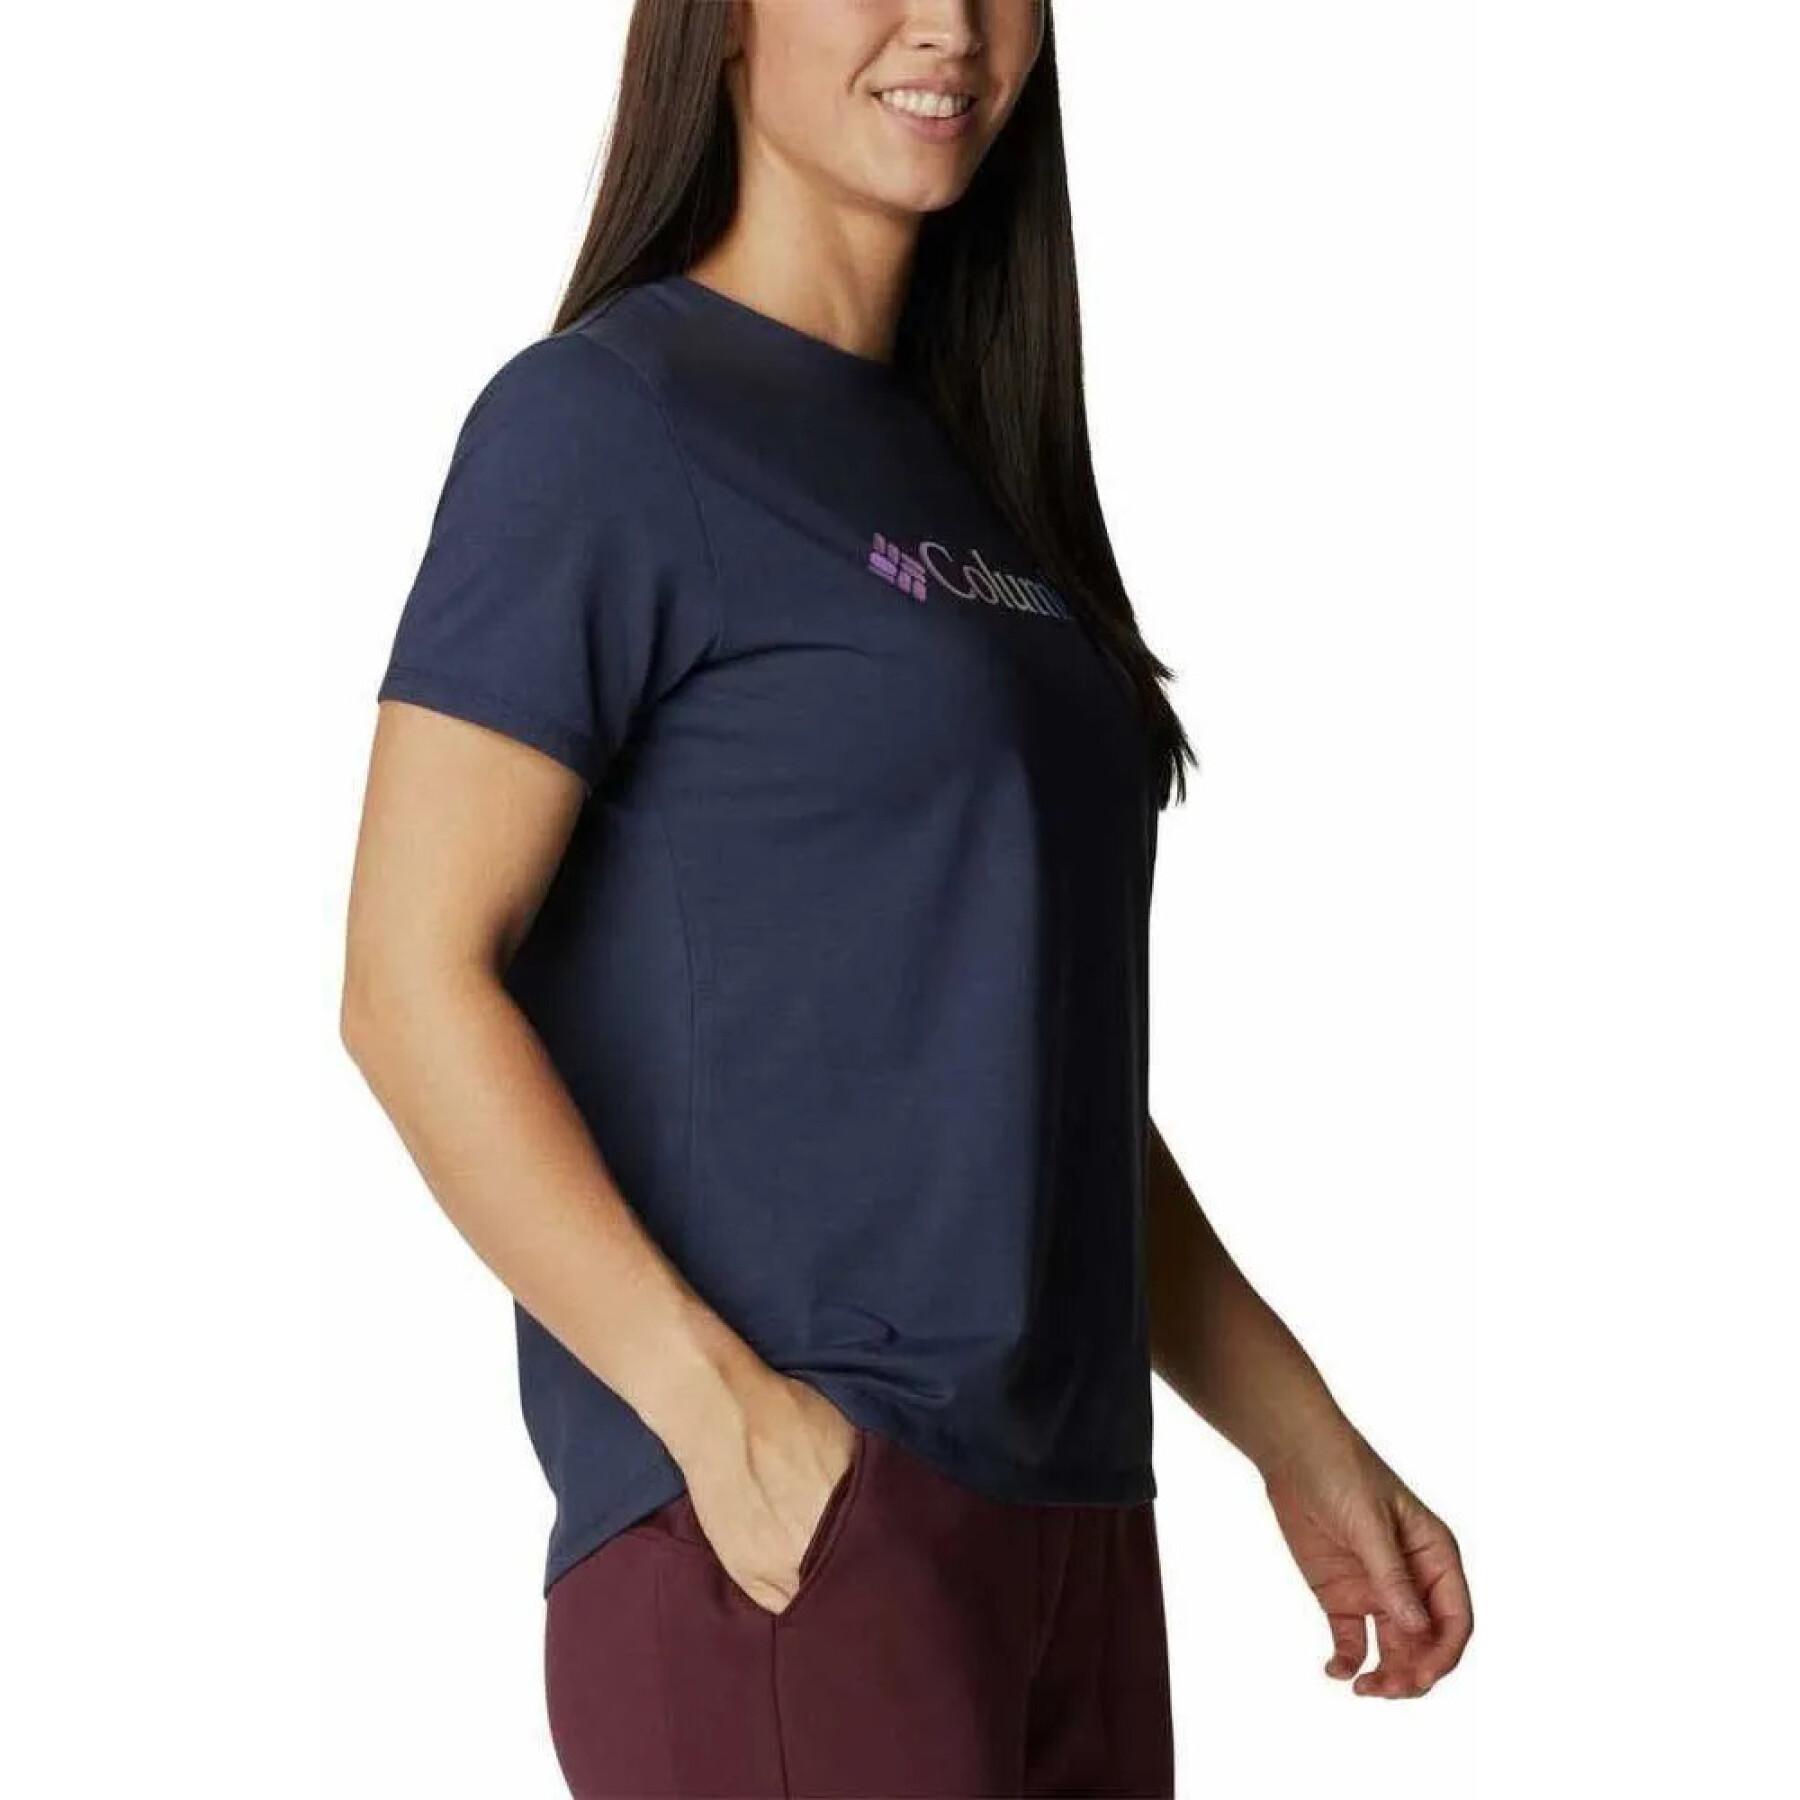 Women's T-shirt Columbia Sun Trek Graphic